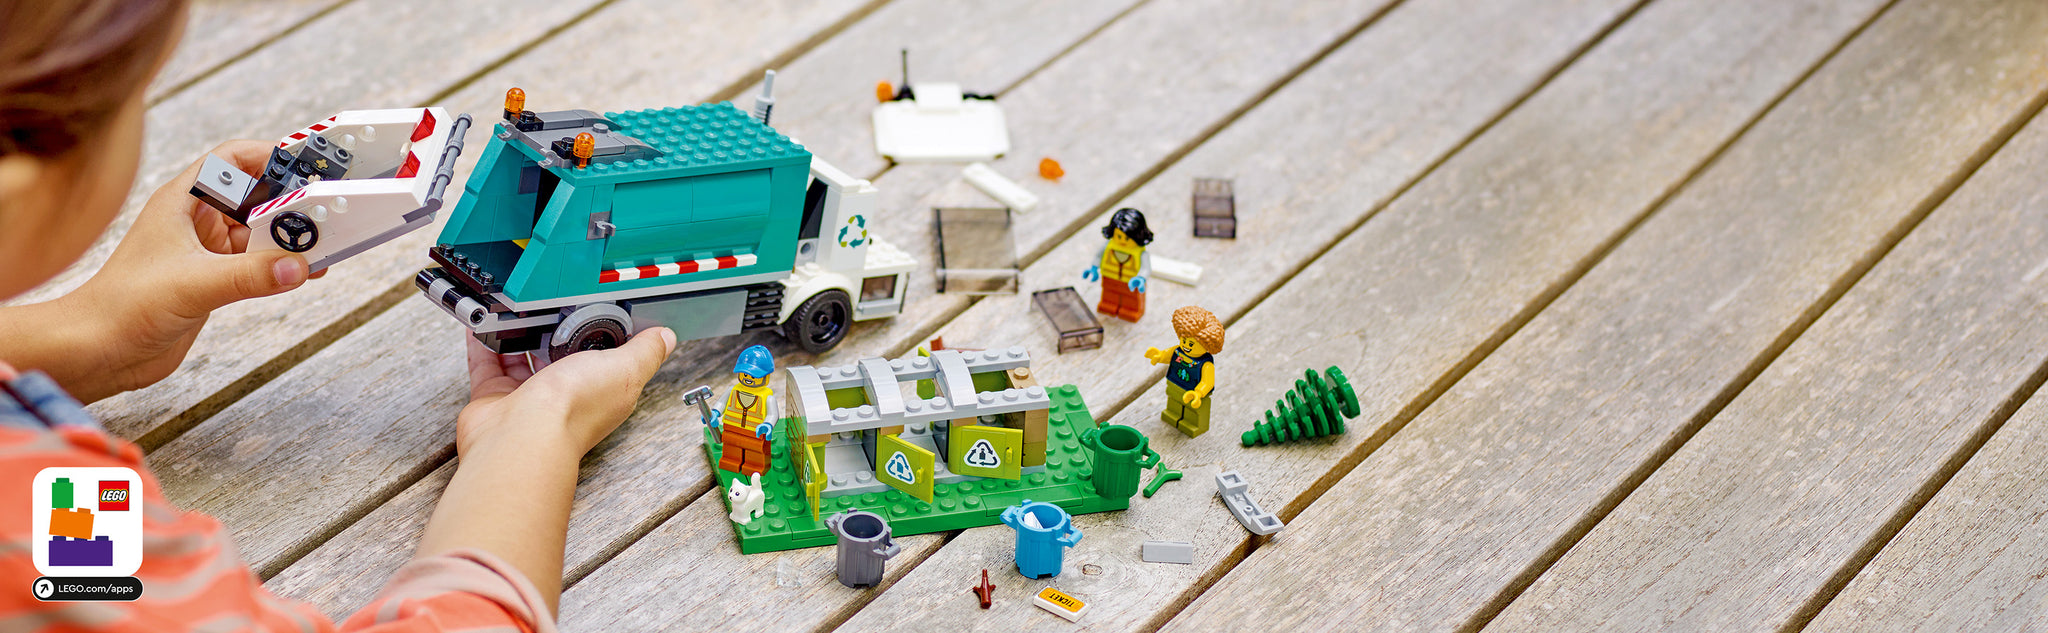 LEGO 60386 Recycle vrachtwagen